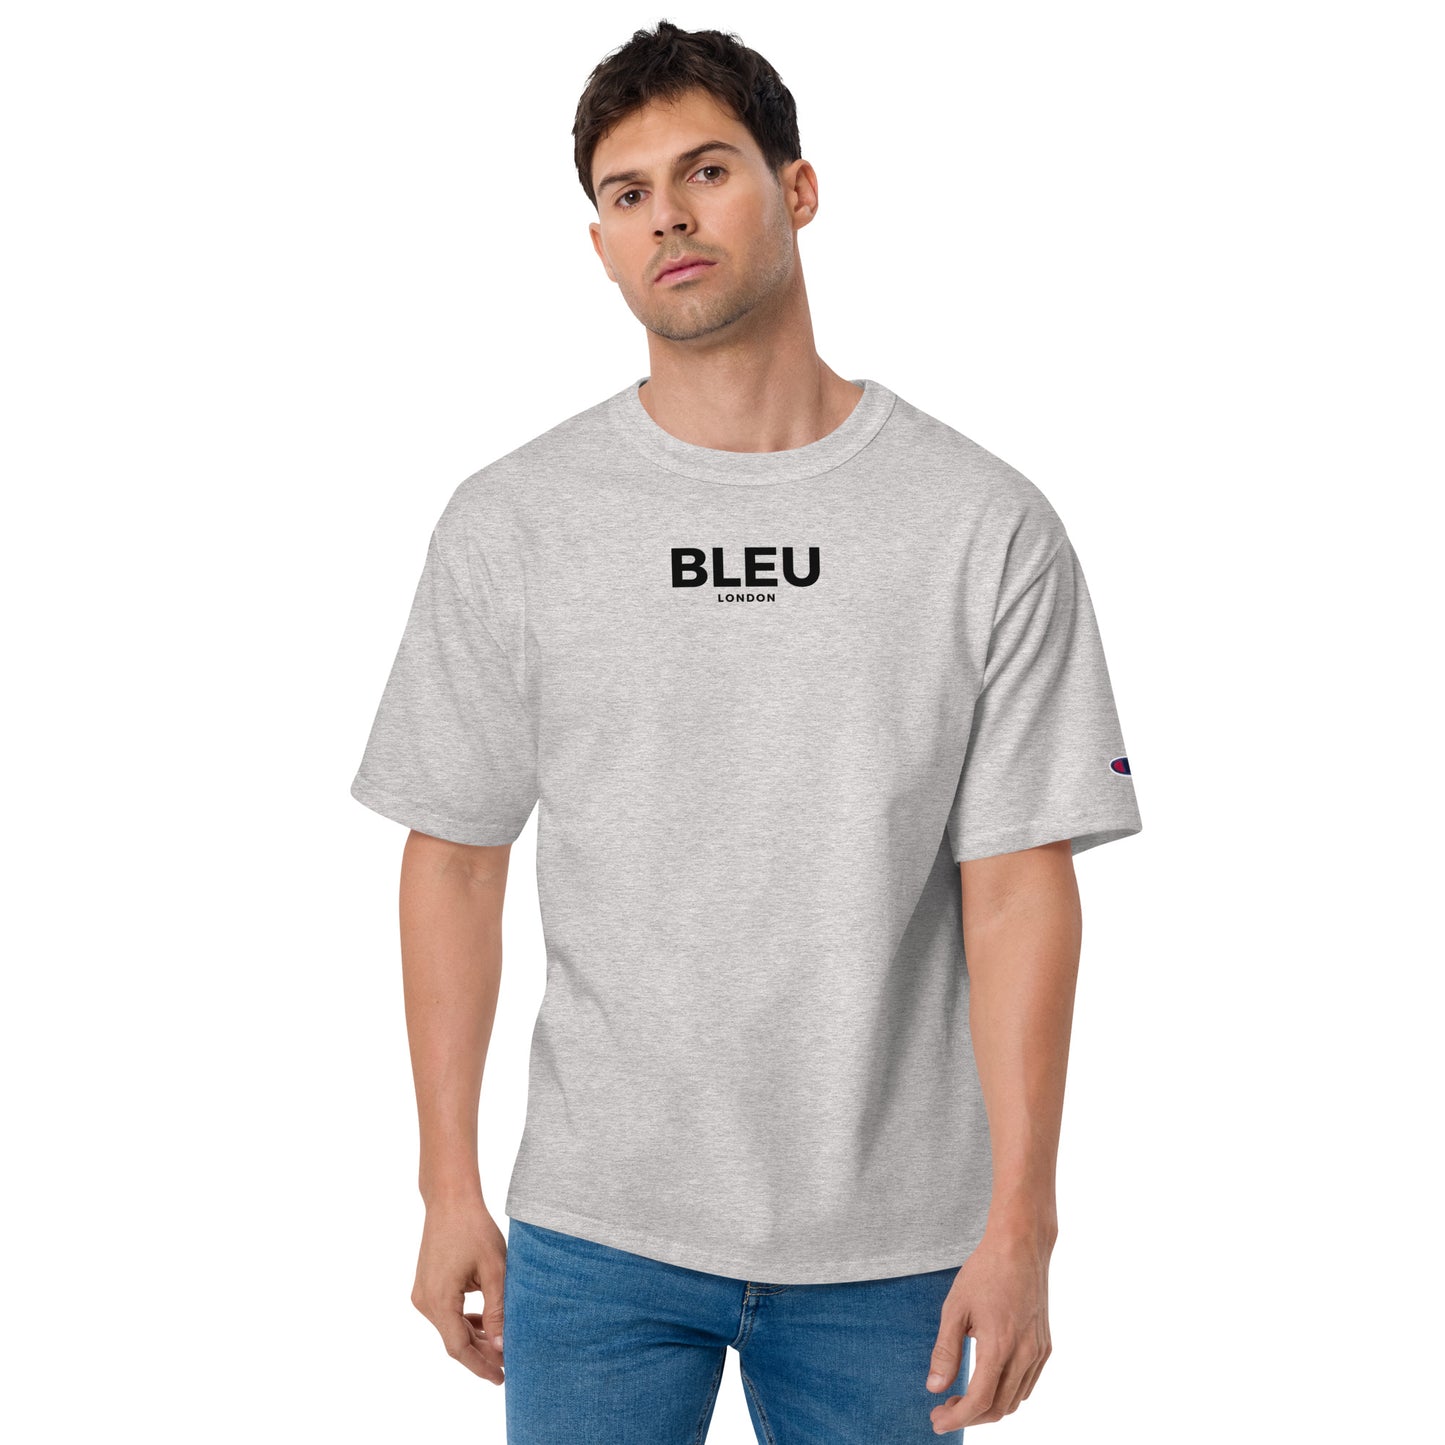 Bleu London x Champion Men's T-Shirt